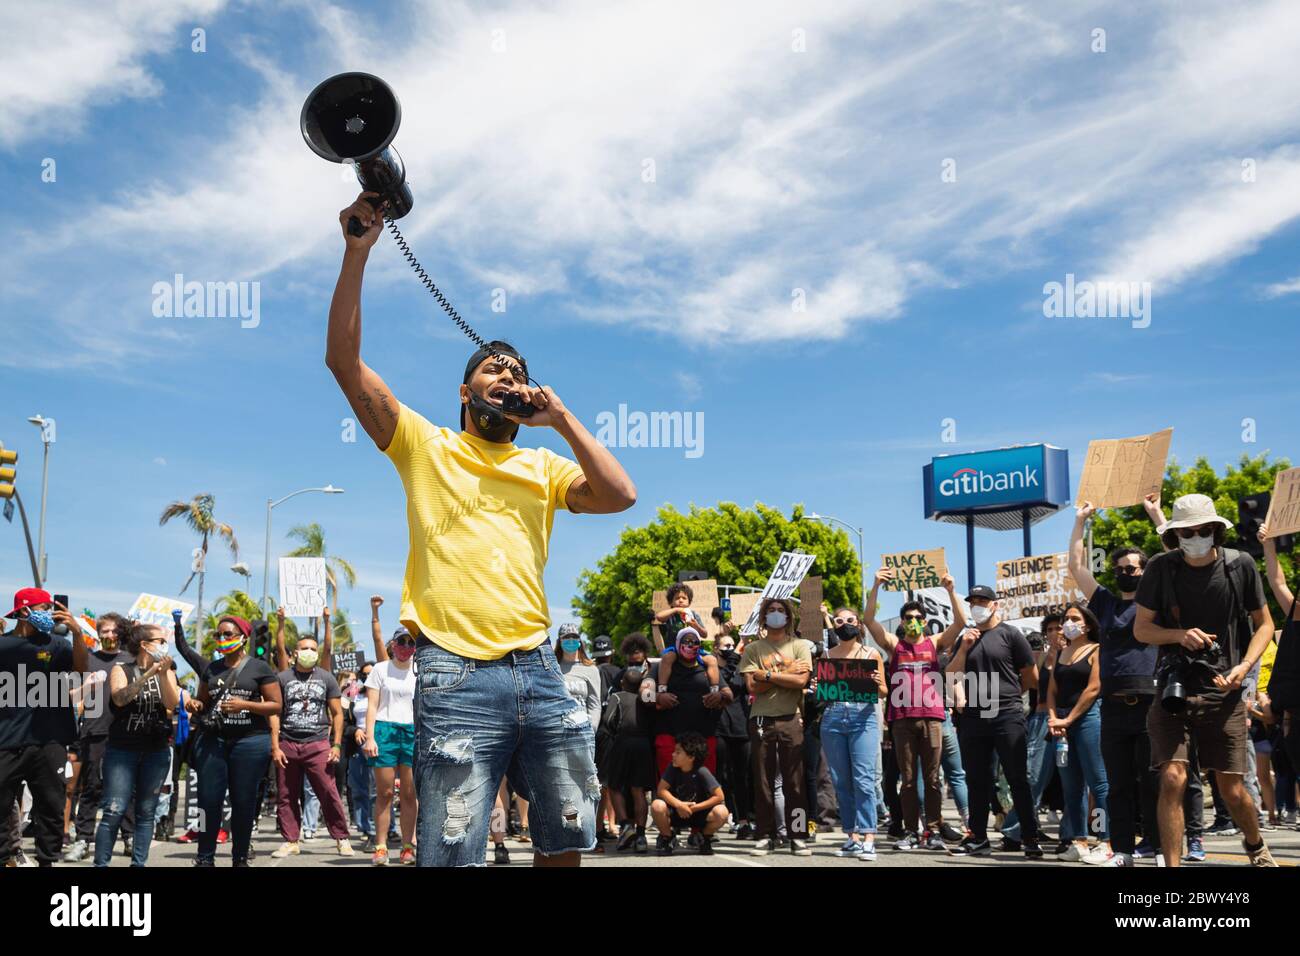 Aktivisten mit Stierkampfarena bei Black Lives Matter Protest gegen die Ermordung von George Floyd: Fairfax District, Los Angeles, CA, USA - 30. Mai 2020 Stockfoto